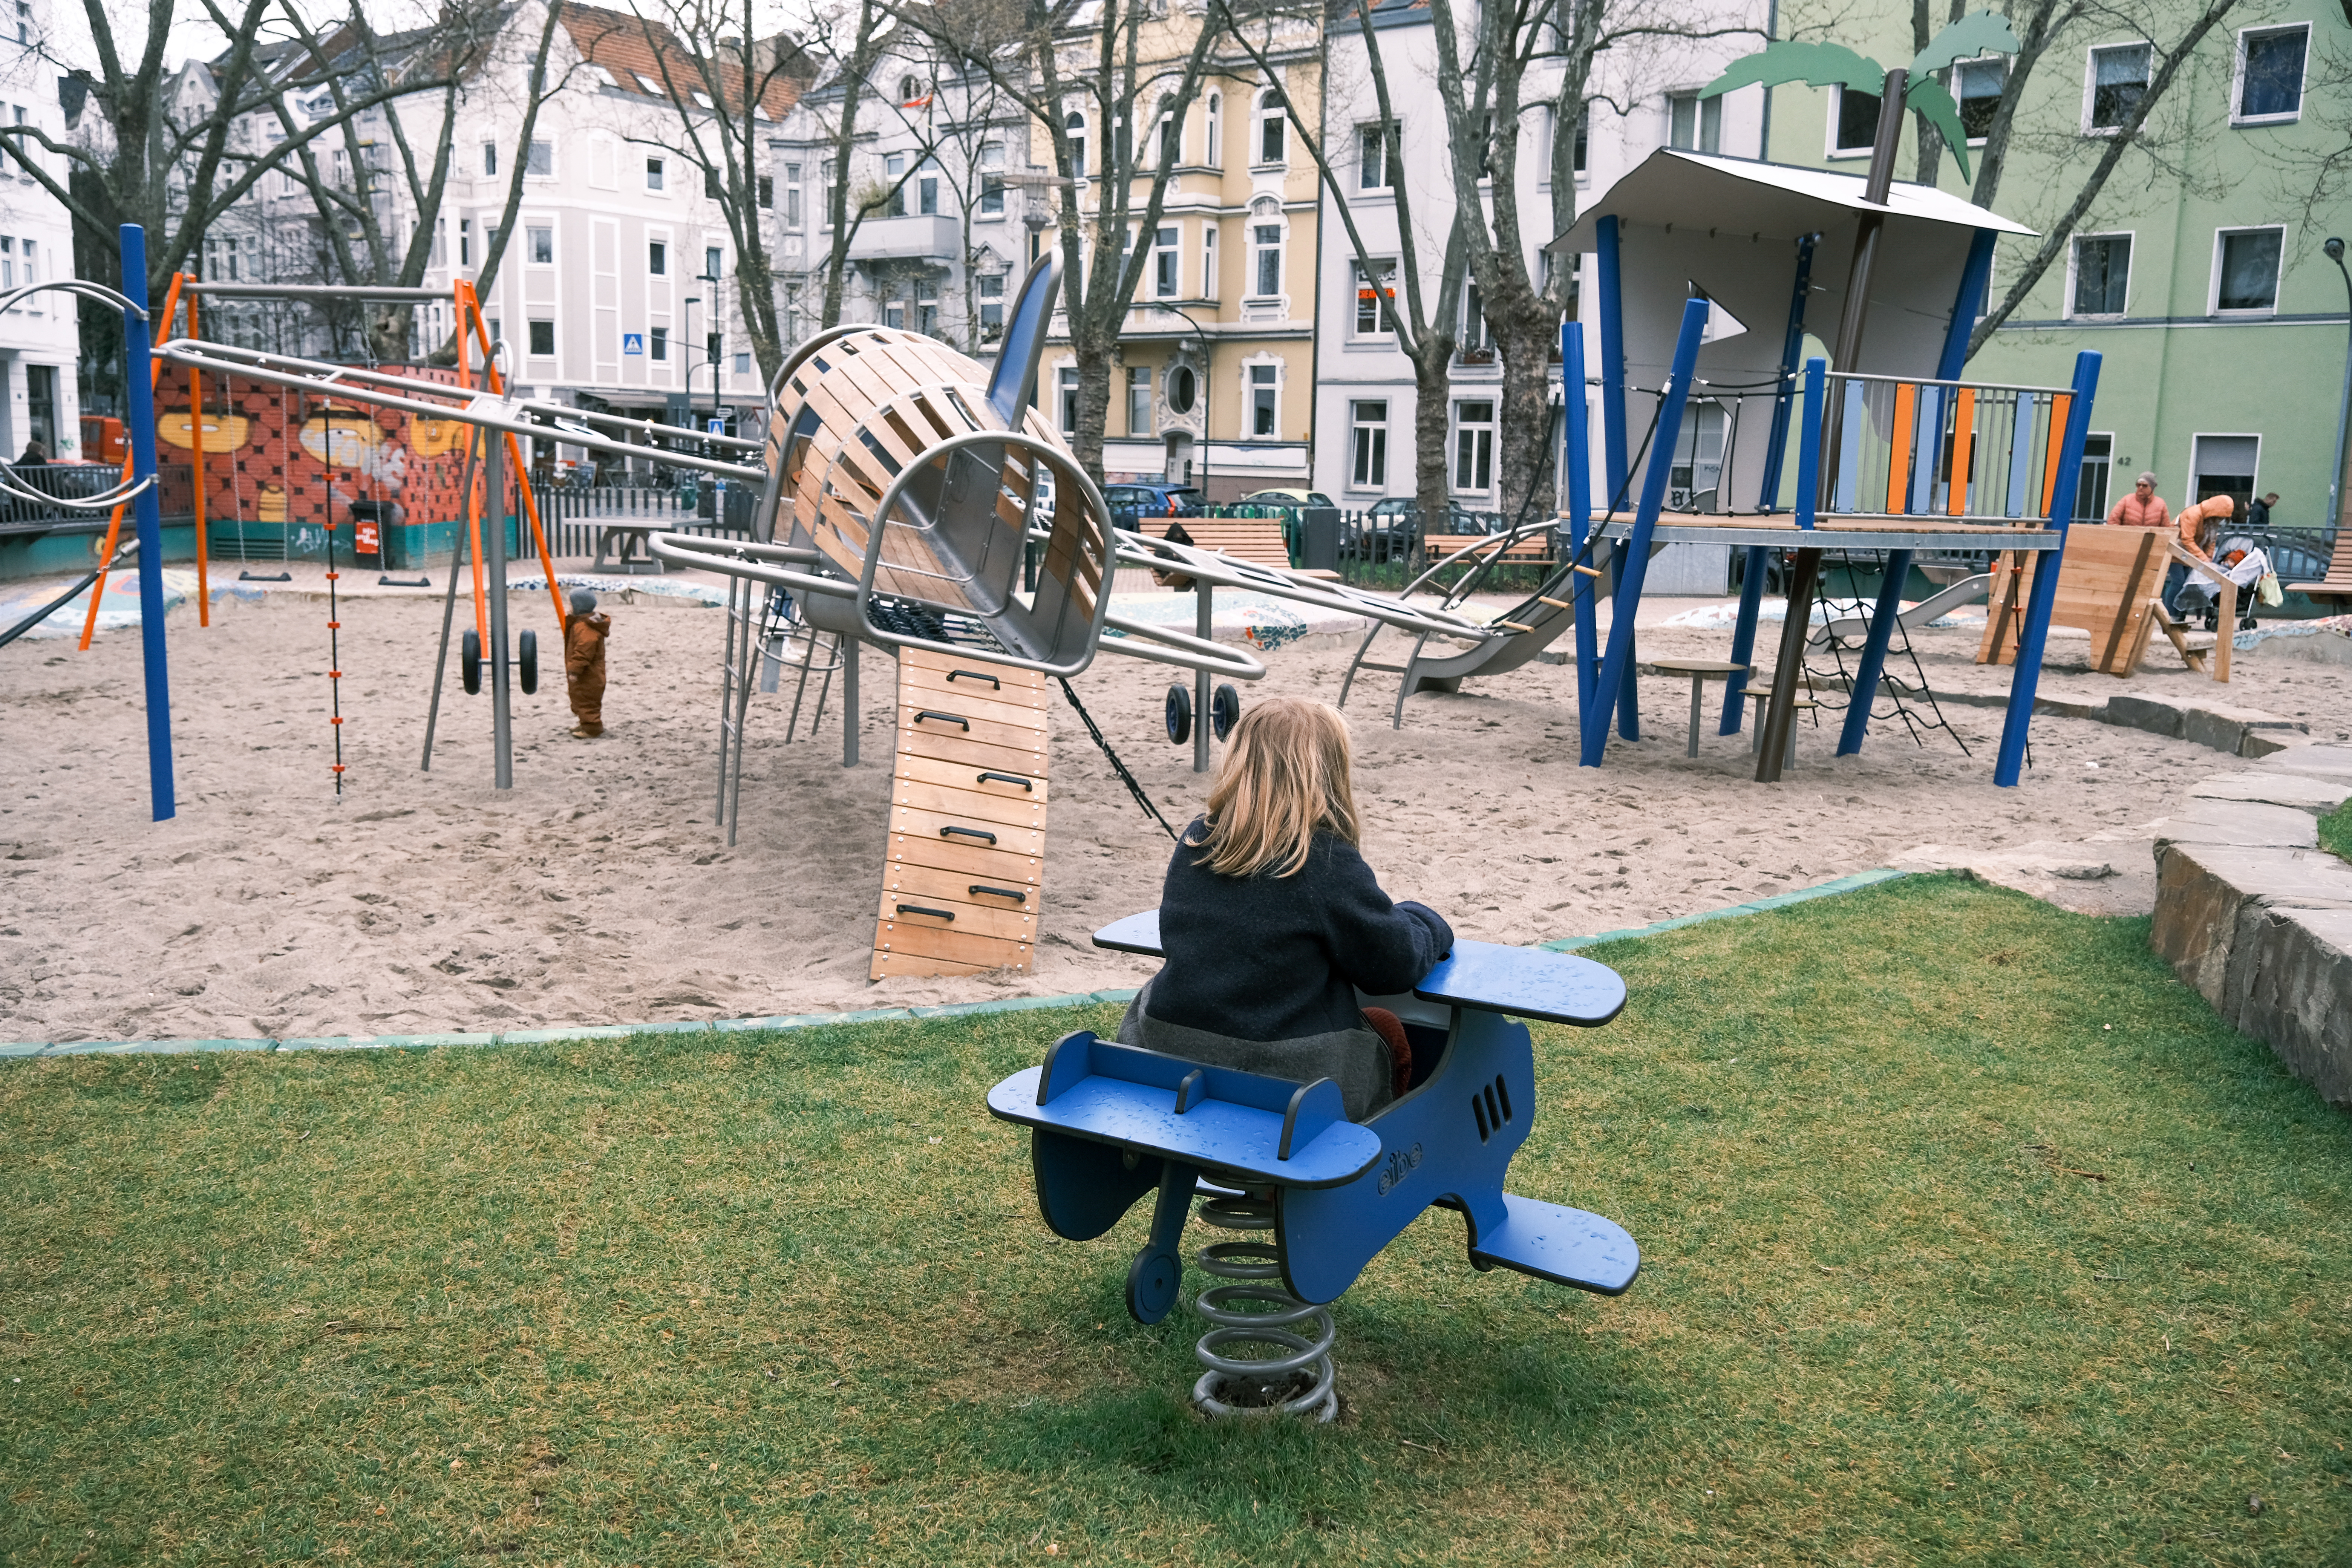 "Ab in den Urlaub" ist das Thema des Kinderpspielplatzes Hermannplatz, sein Mittelpunkt ist ein großes Flugzeug, auf dem die Kinder spielen und klettern können © Landeshauptstadt Düsseldorf/Michael Gstettenbauer 